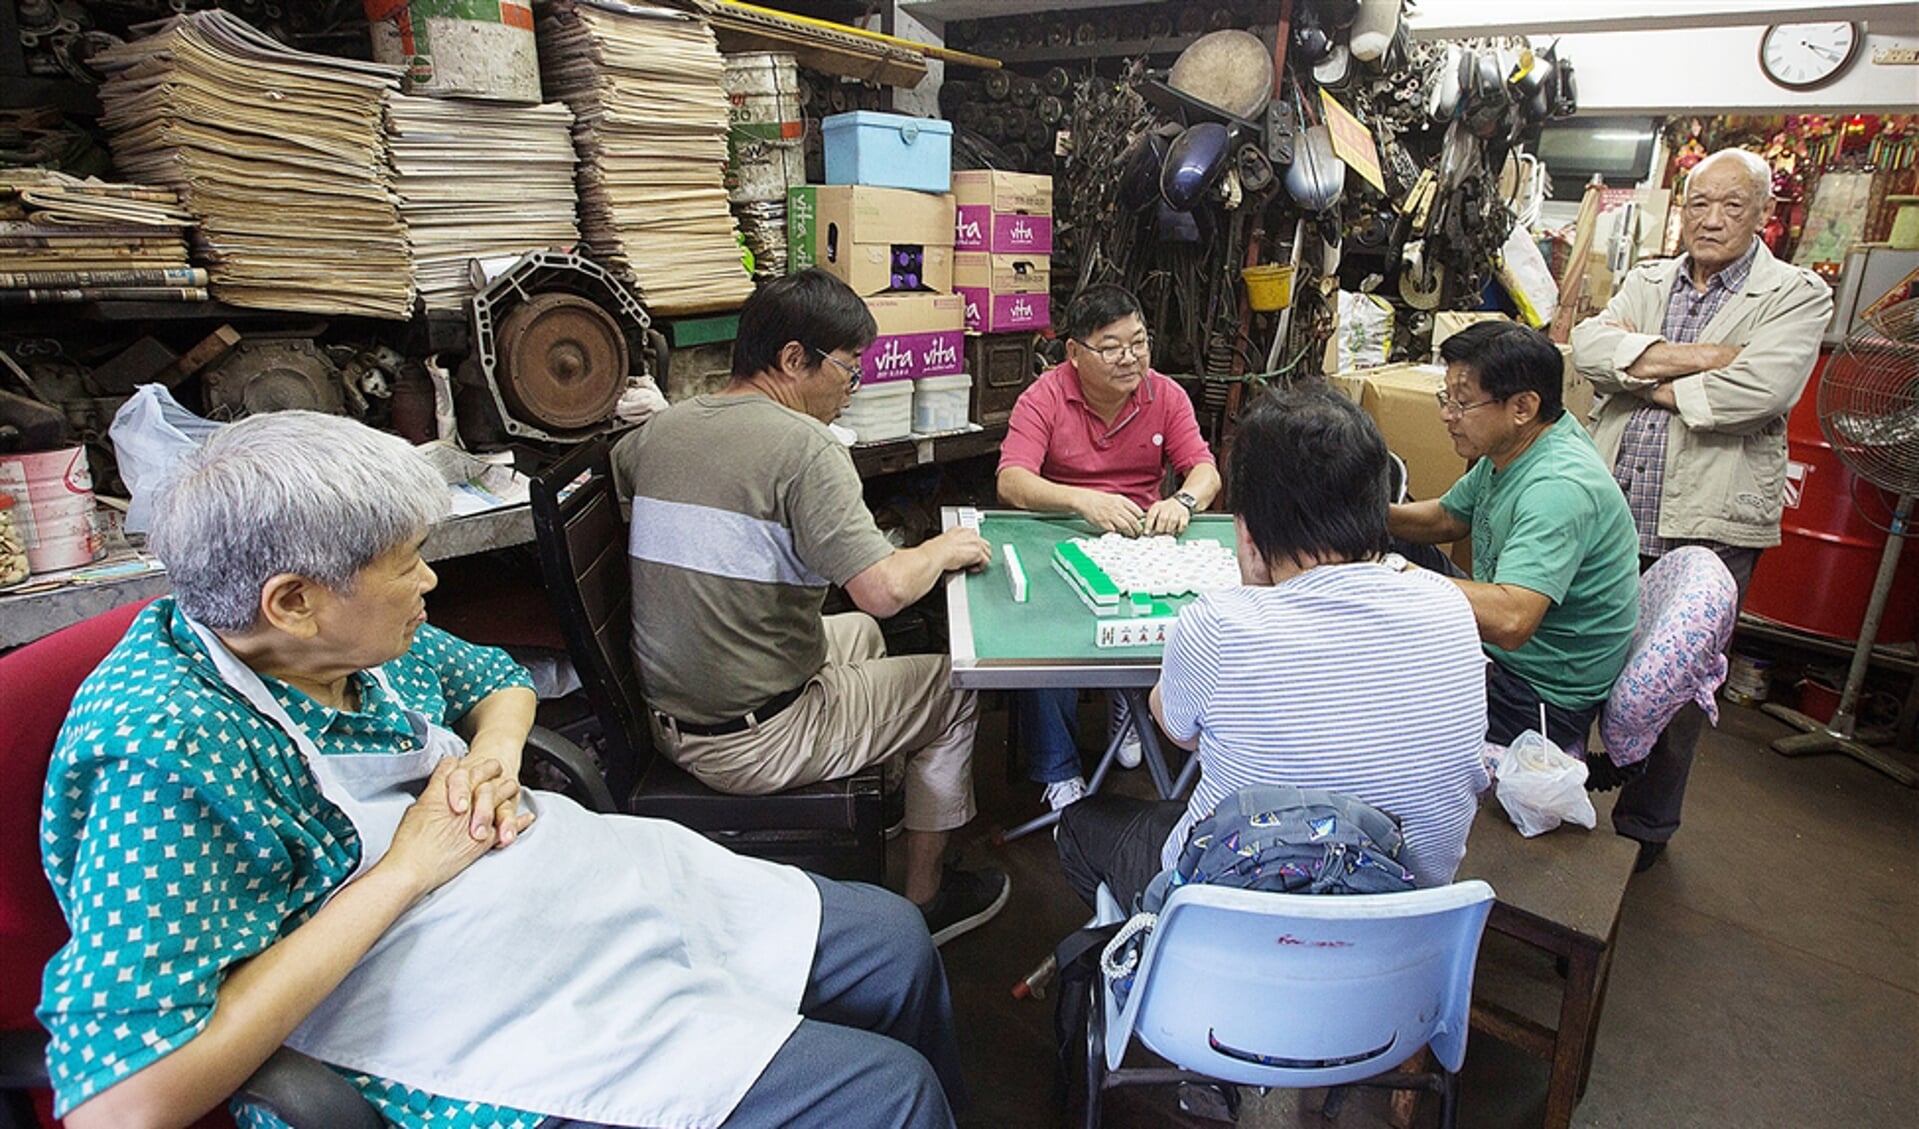 Het Chinese spel Mahjong, vooral geliefd onder ouderen, wordt gezien als ‘het spel van het volk’.